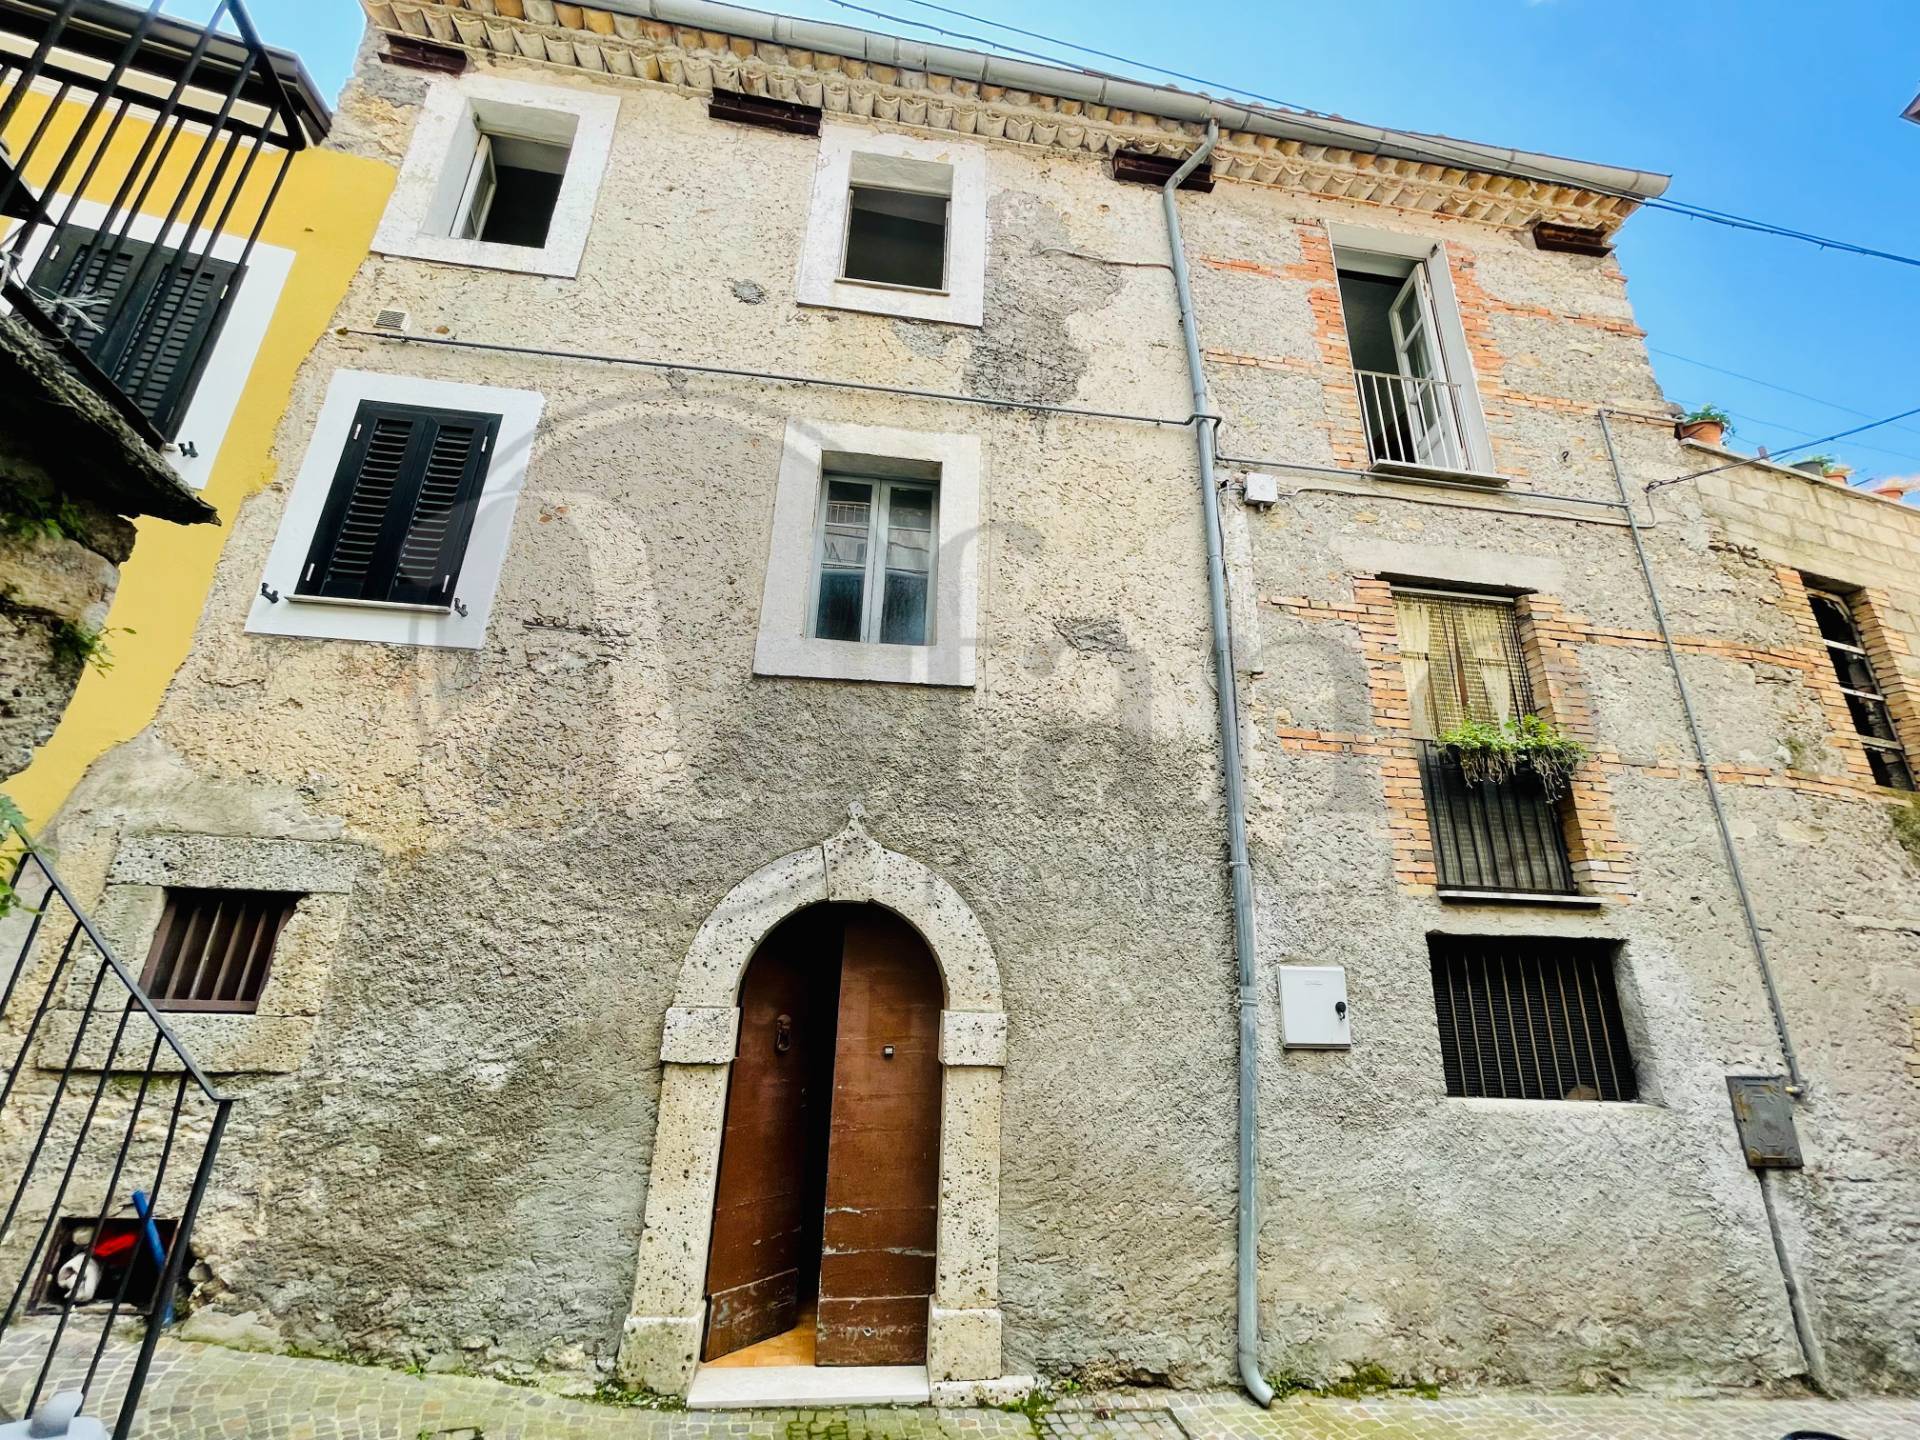 Appartamento in vendita a Santopadre, 6 locali, prezzo € 56.000 | CambioCasa.it